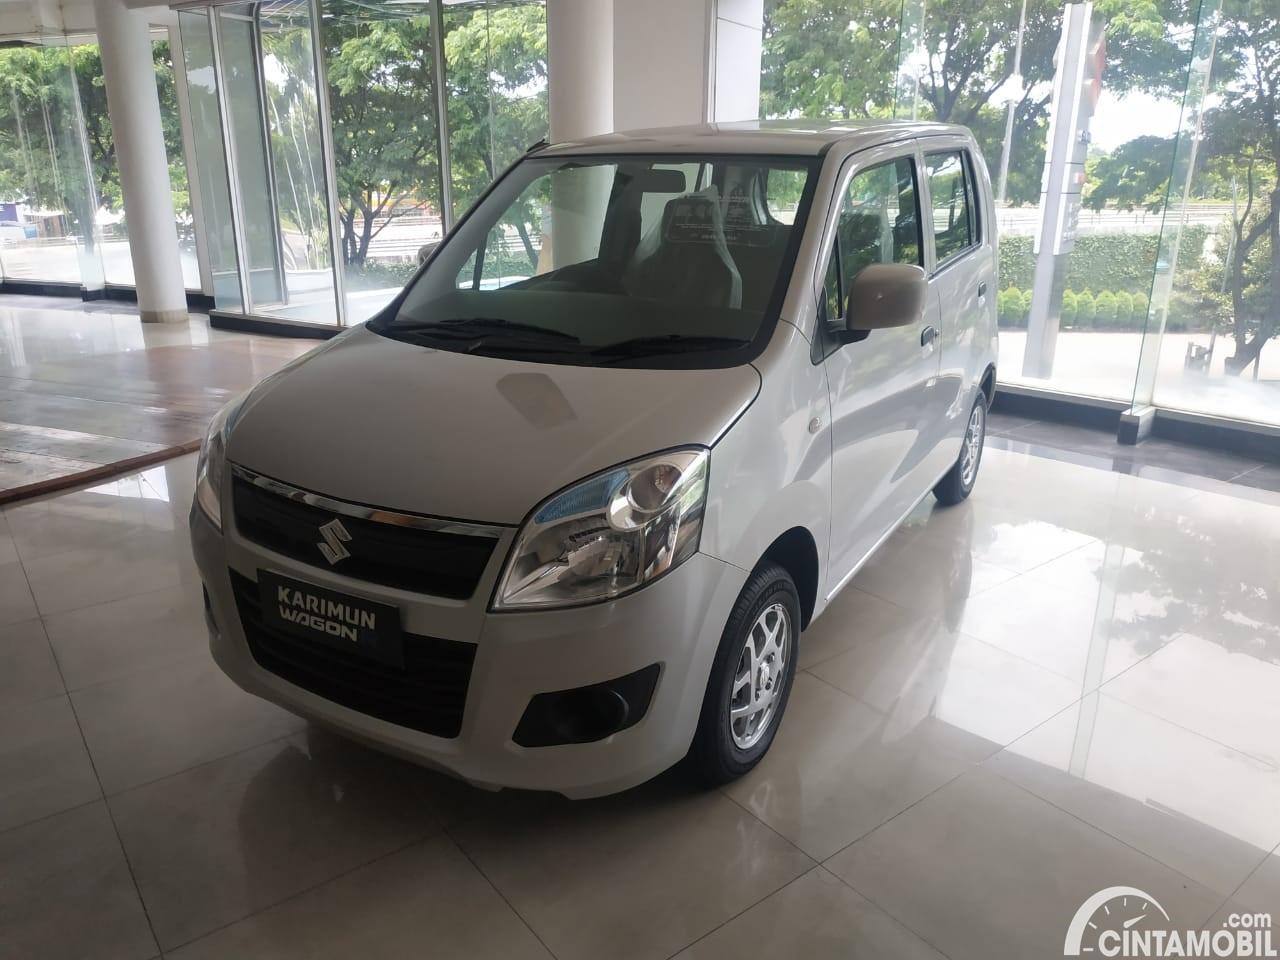  Suzuki  Karimun  Jual  Beli  Mobil  Bekas Murah 09 2021